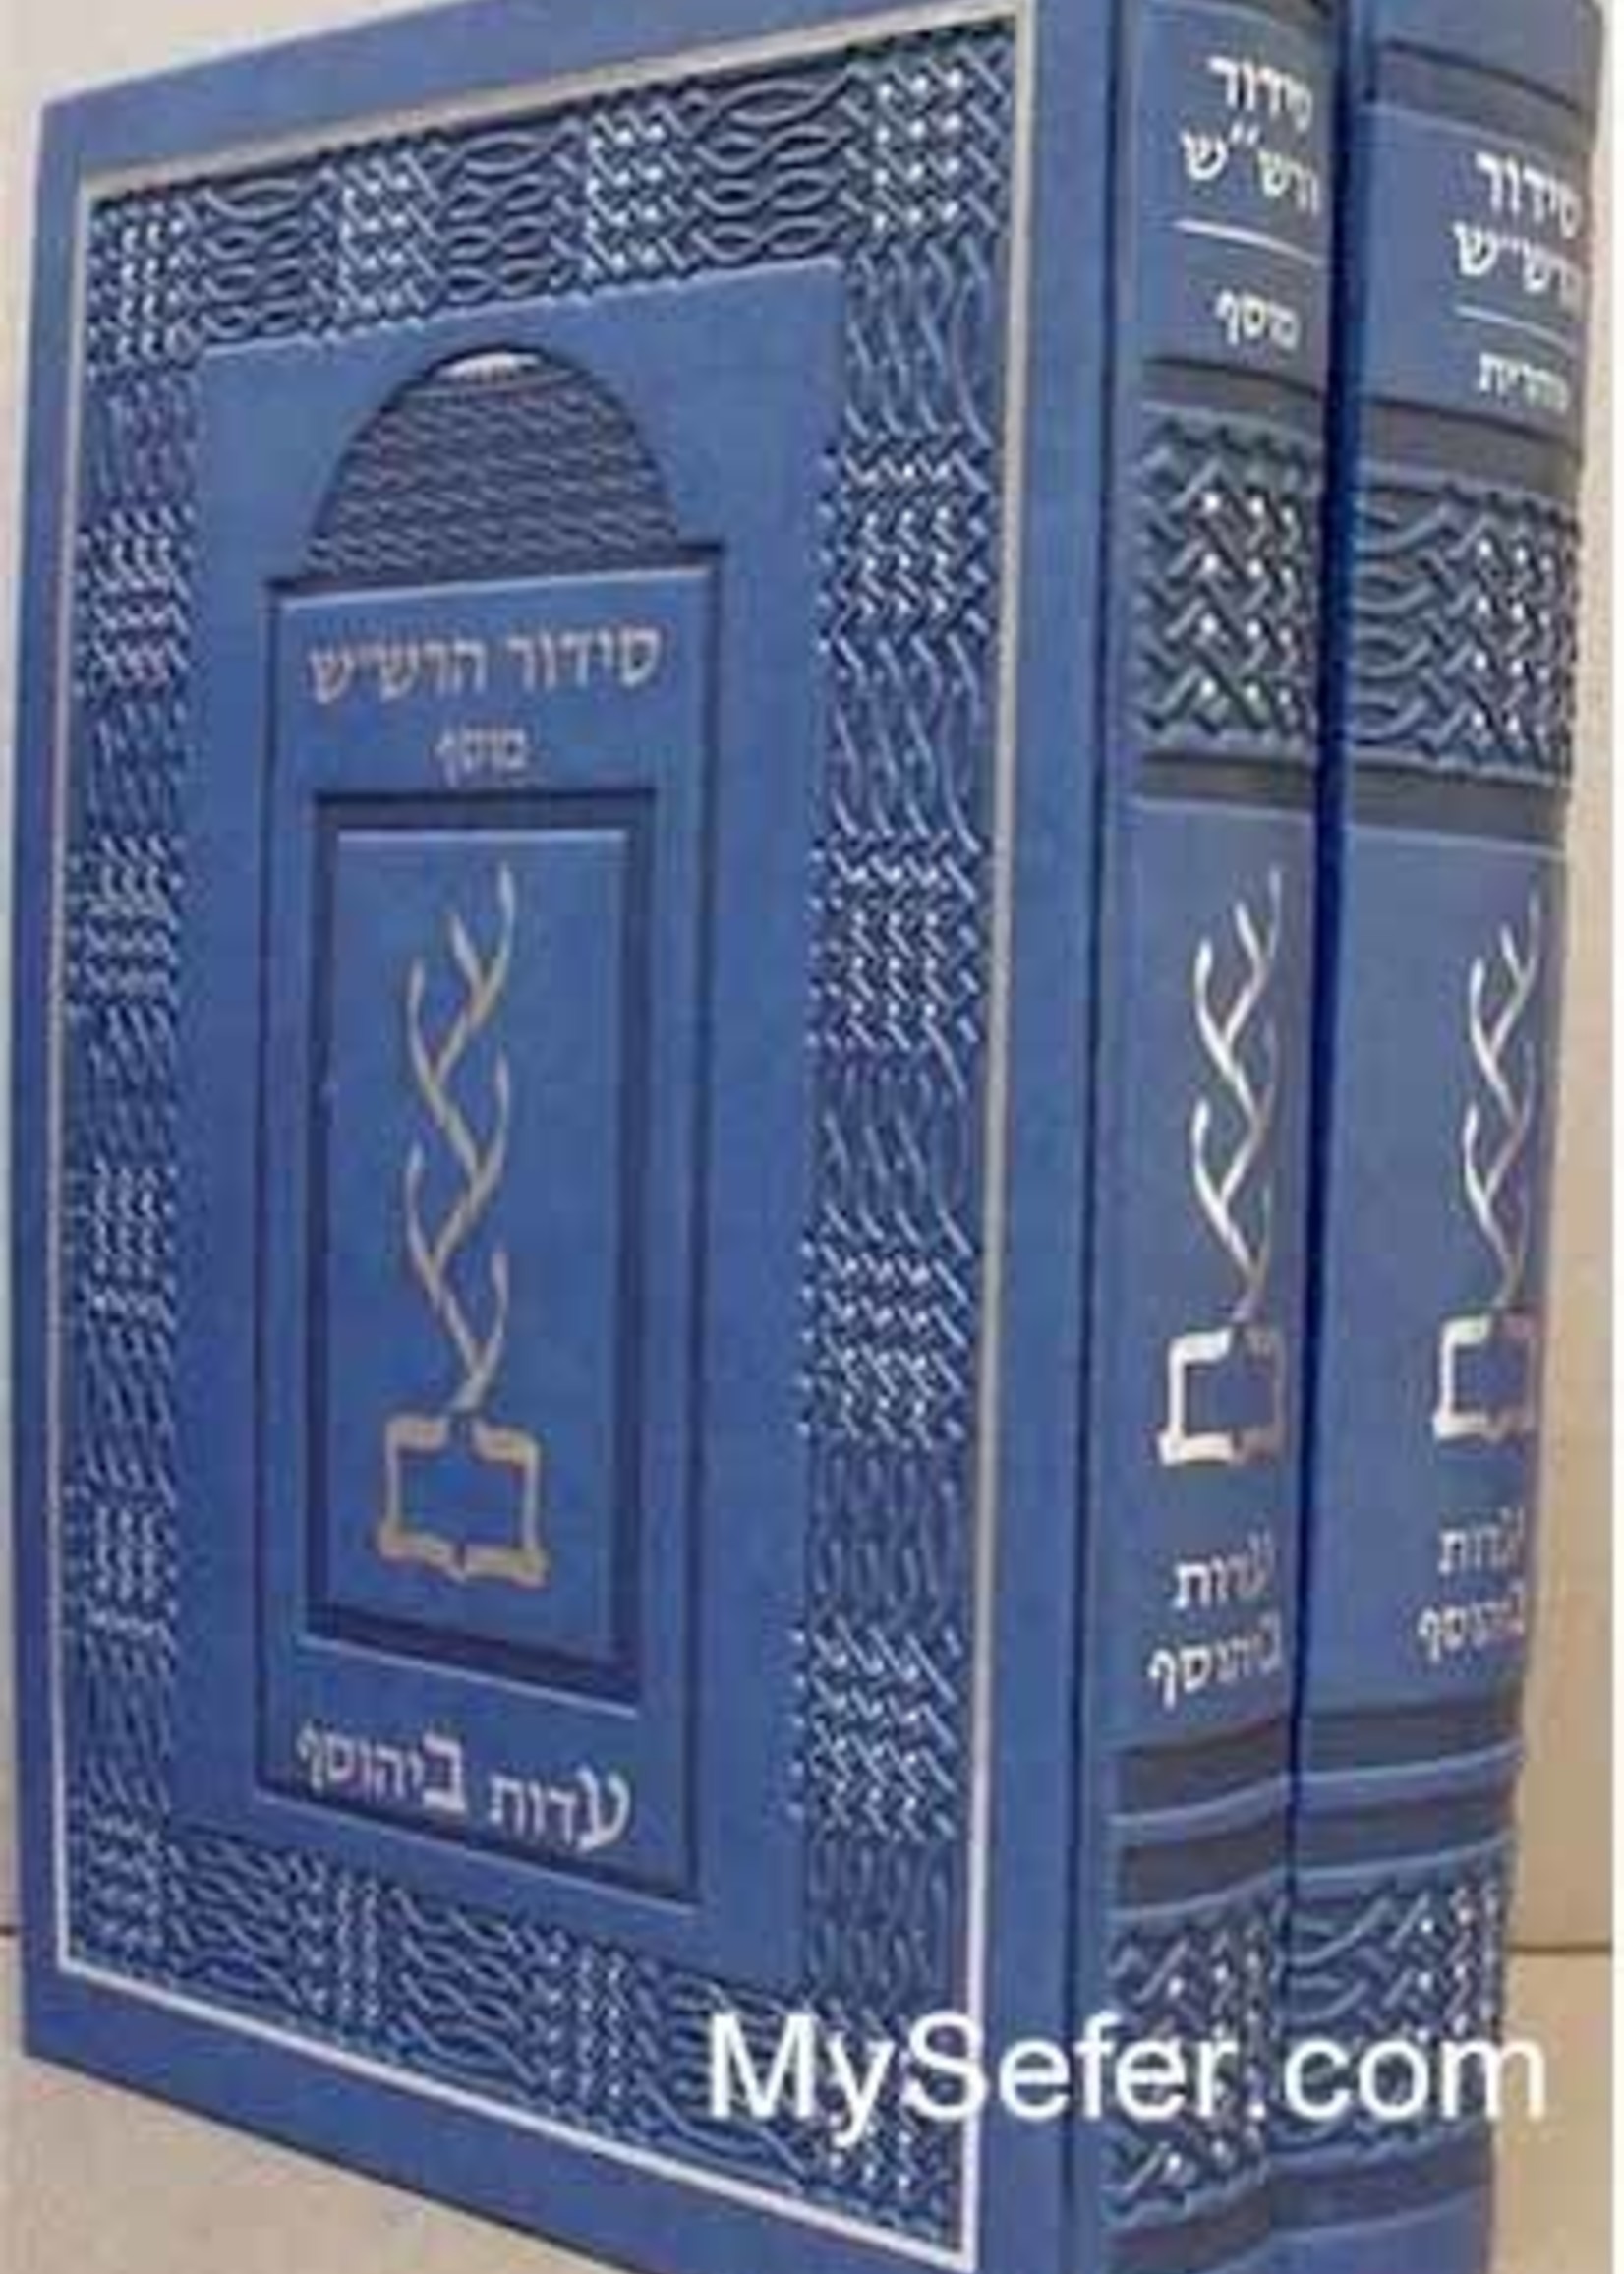 Rabbi Shalom Sharabi Siddur HaRashash in color - Shacharit & Mussaf Rosh Chodesh (2 vol.)/  סידור הרשש - שחרית ומוסף ראש חודש ב כרכים